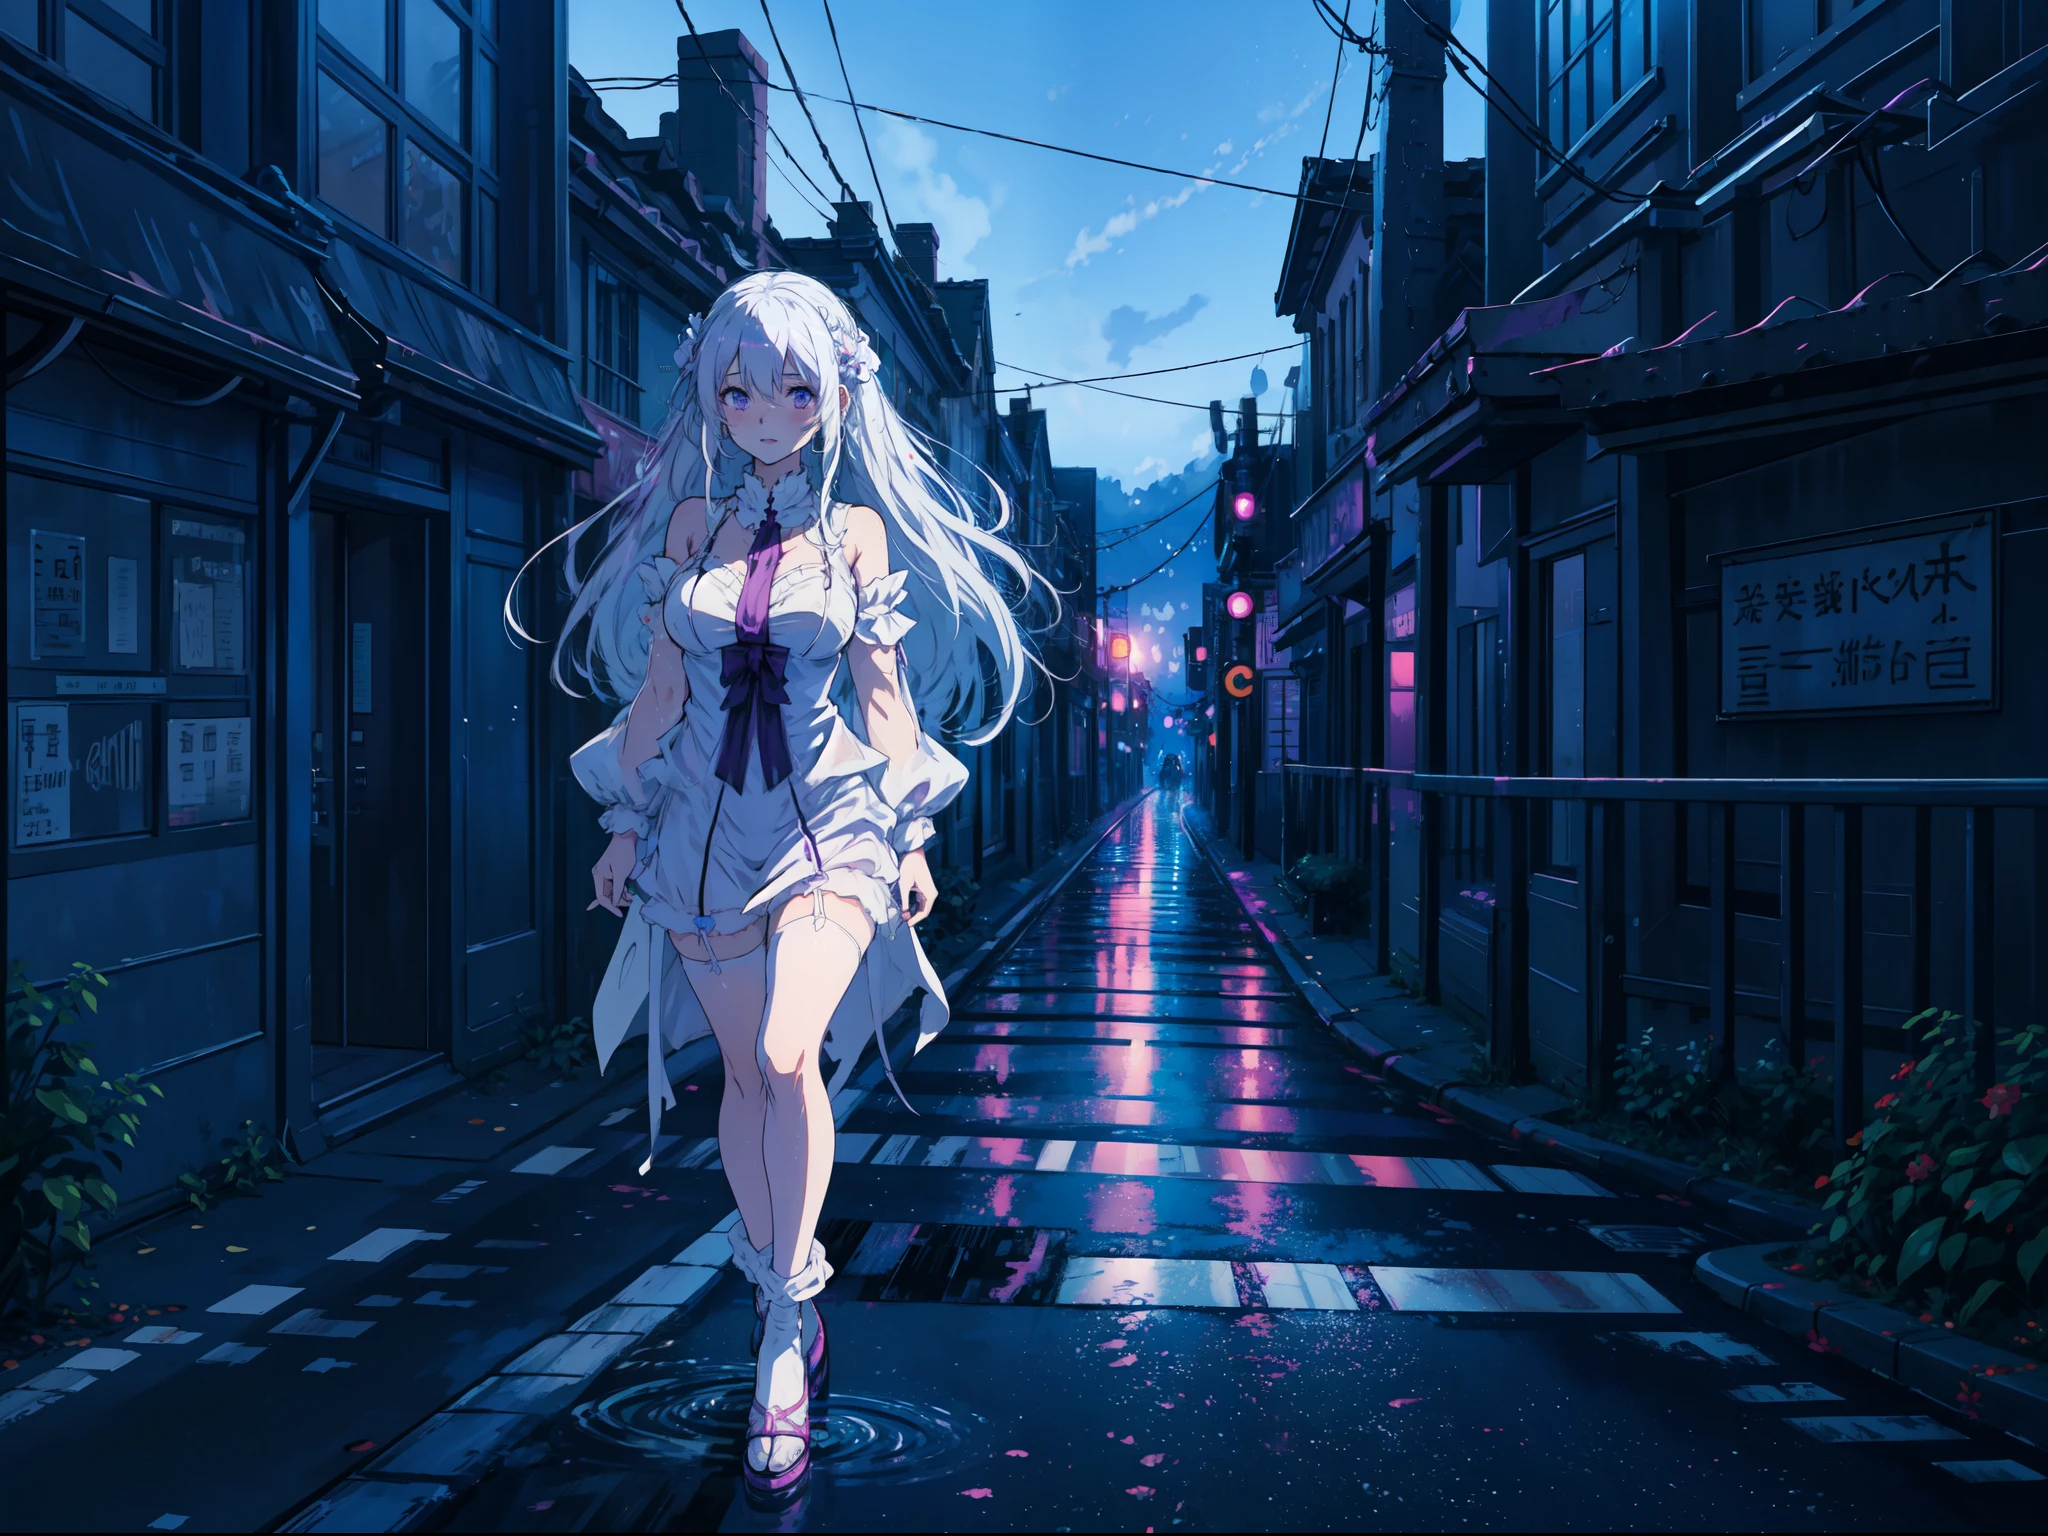 (Anime-Kunststil), Emilia aus Re Zero,lange weiße Haare lila Augen, Erröten, Dessous tragen, Spaziergang auf der nächtlichen Stadtstraße, nasse Straße,lebendige Farben, freudiger Ausdruck, Erröten, dynamische pose.